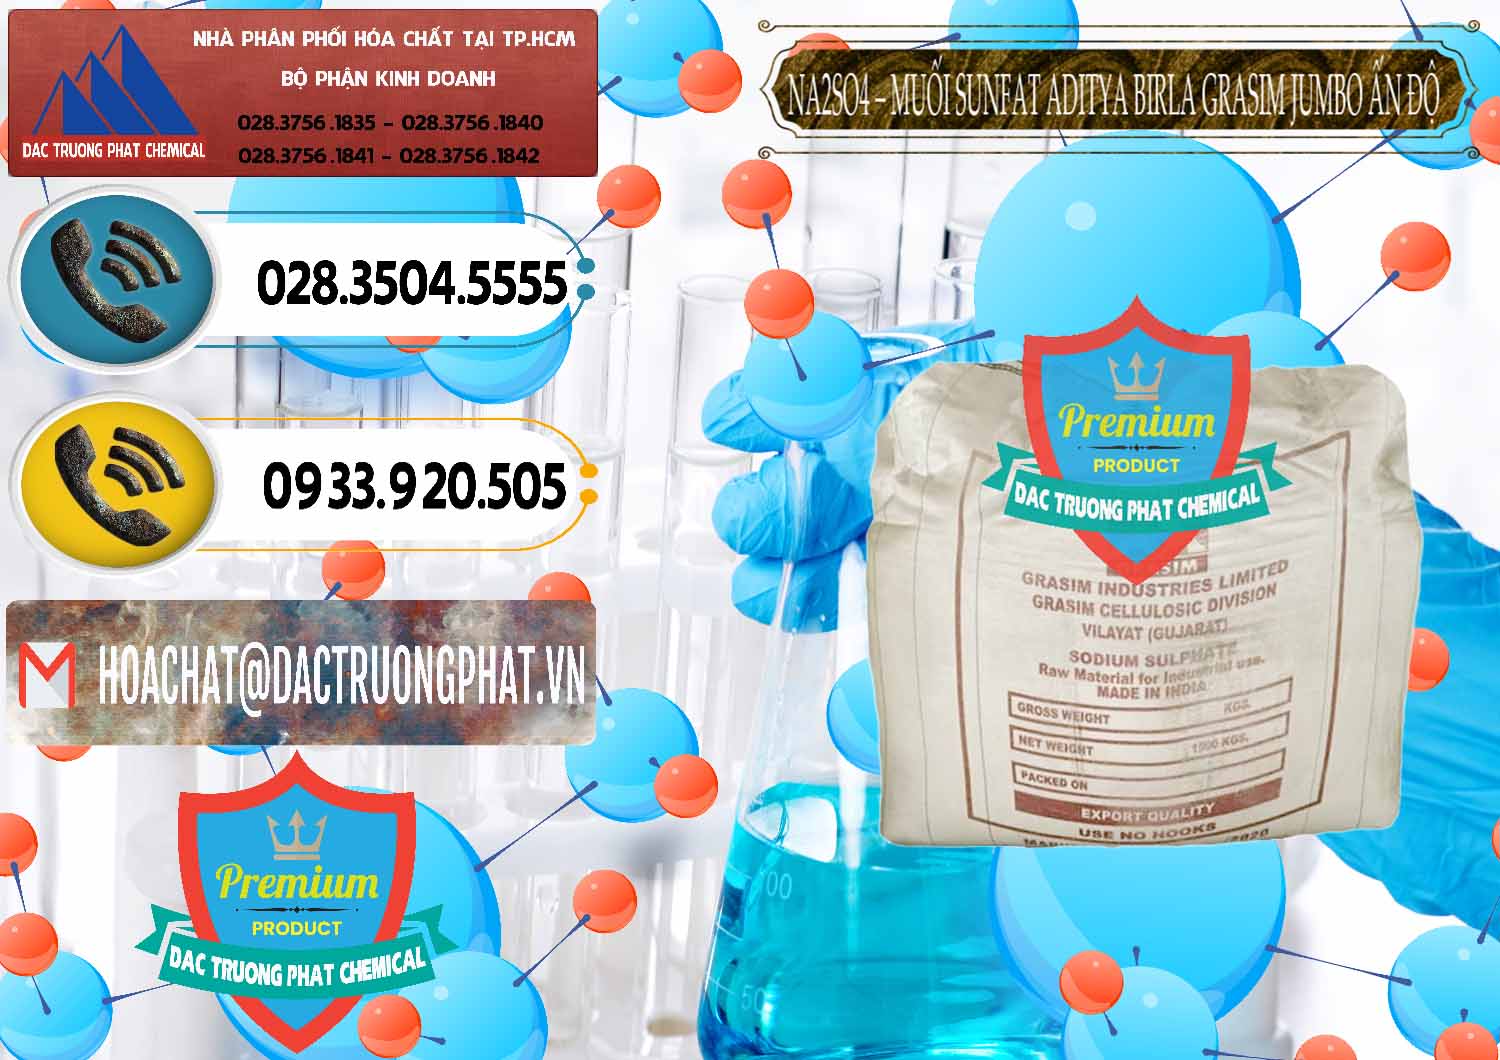 Nơi cung cấp và bán Sodium Sulphate - Muối Sunfat Na2SO4 Jumbo Bành Aditya Birla Grasim Ấn Độ India - 0357 - Cty cung cấp _ nhập khẩu hóa chất tại TP.HCM - hoachatdetnhuom.vn